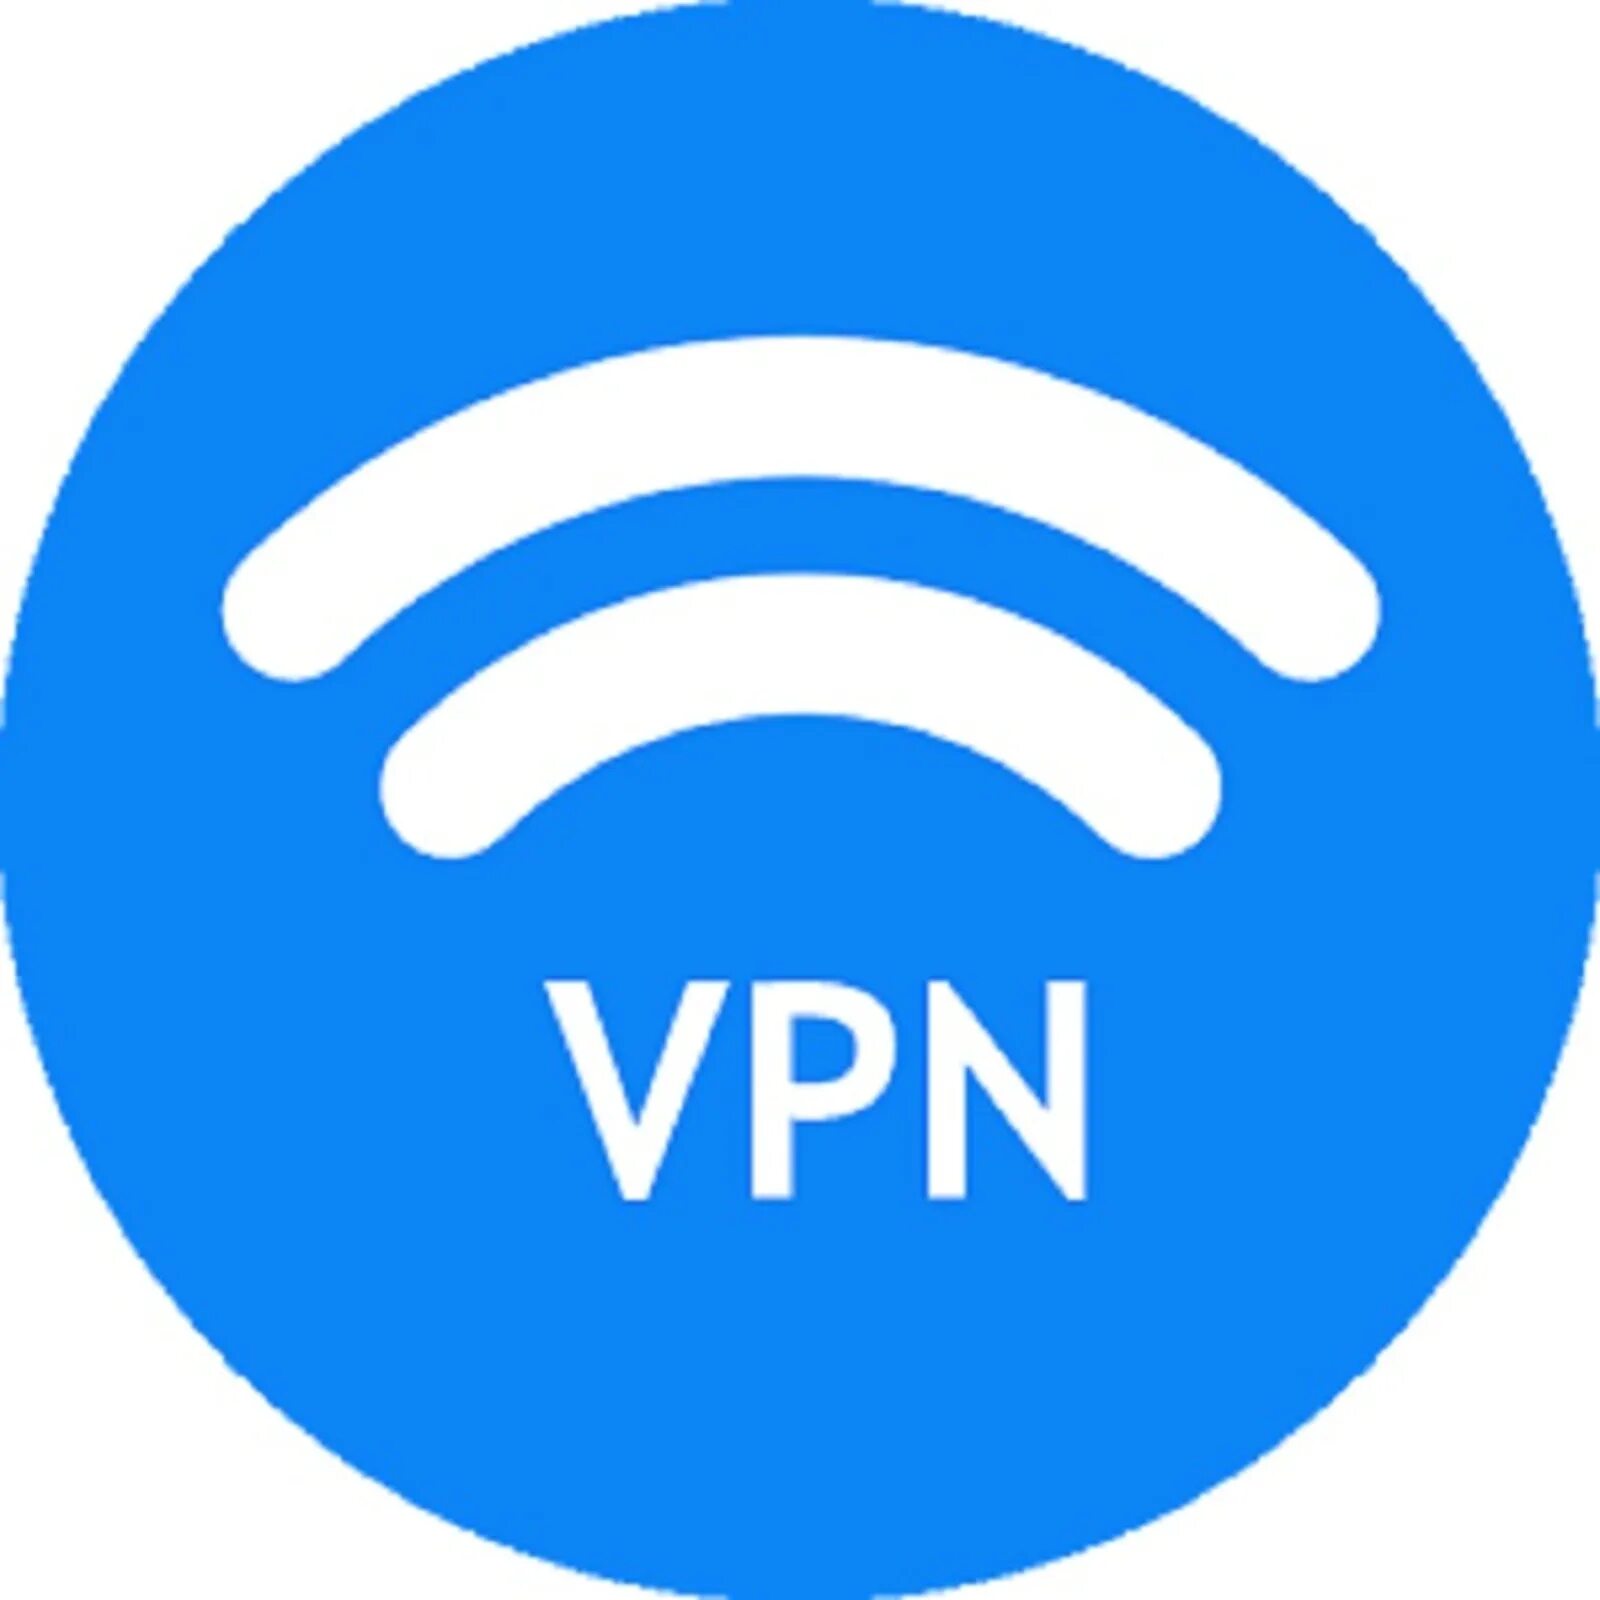 Private n. VPN. VPN пиктограмма. Впн лого. Виртуальная частная сеть (VPN).